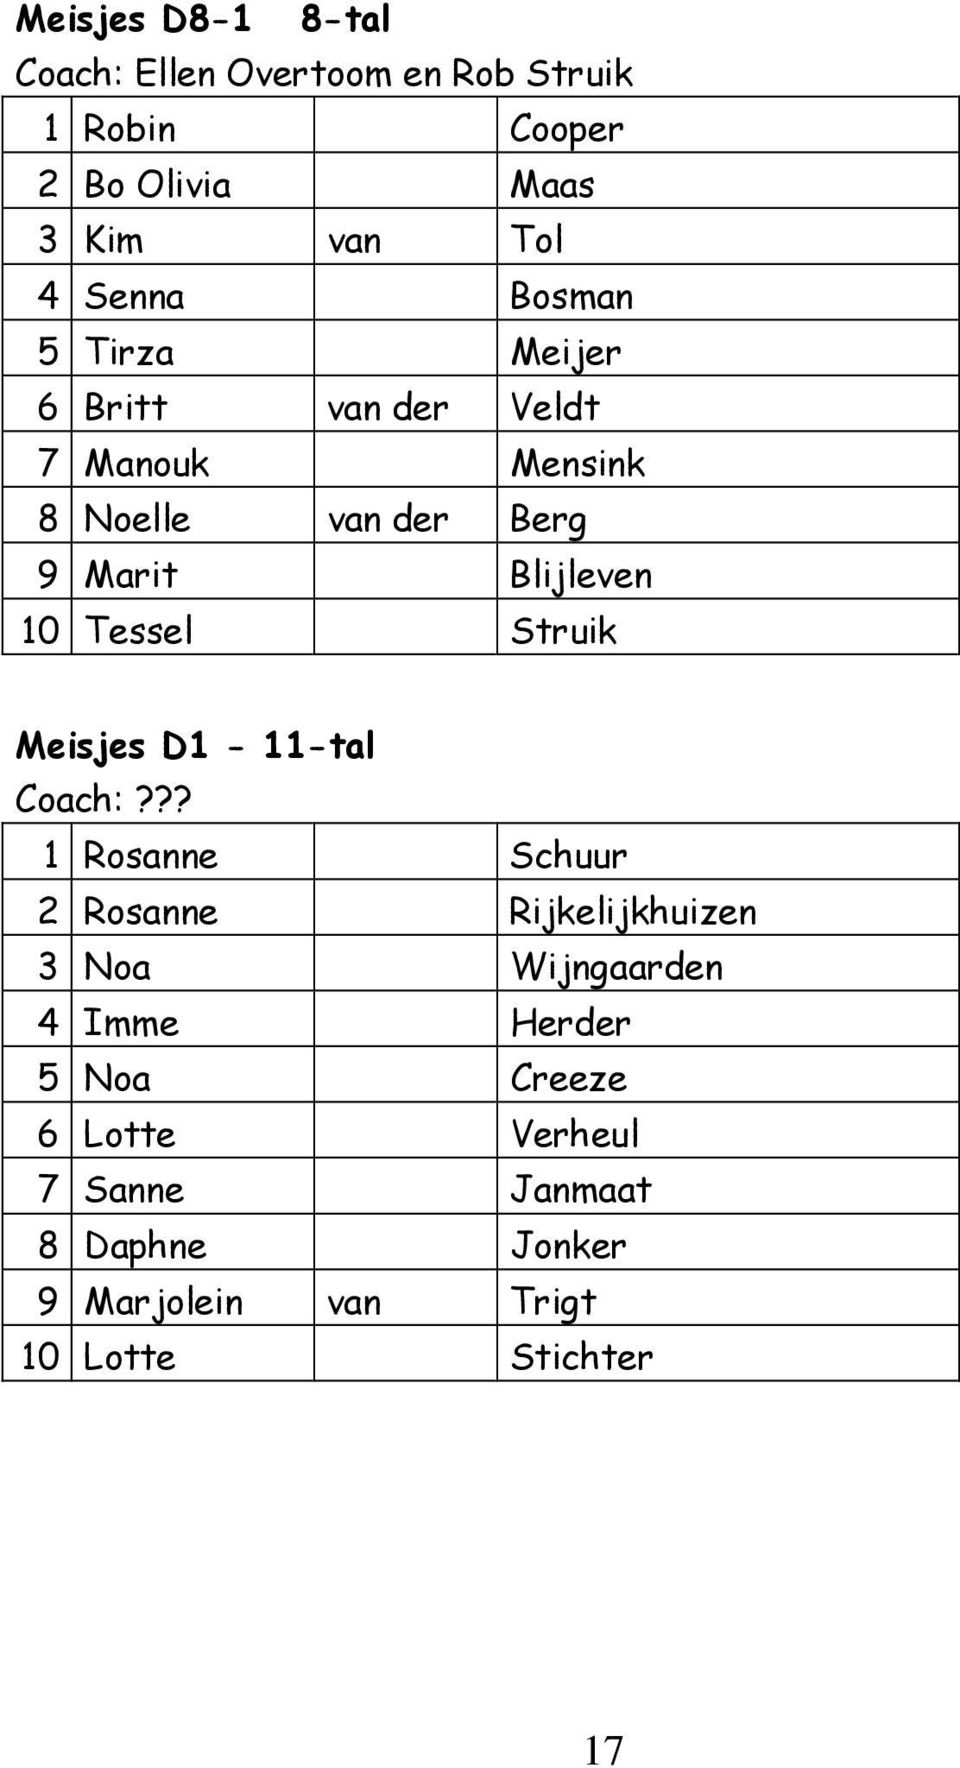 Tessel Struik Meisjes D1-11-tal Coach:?